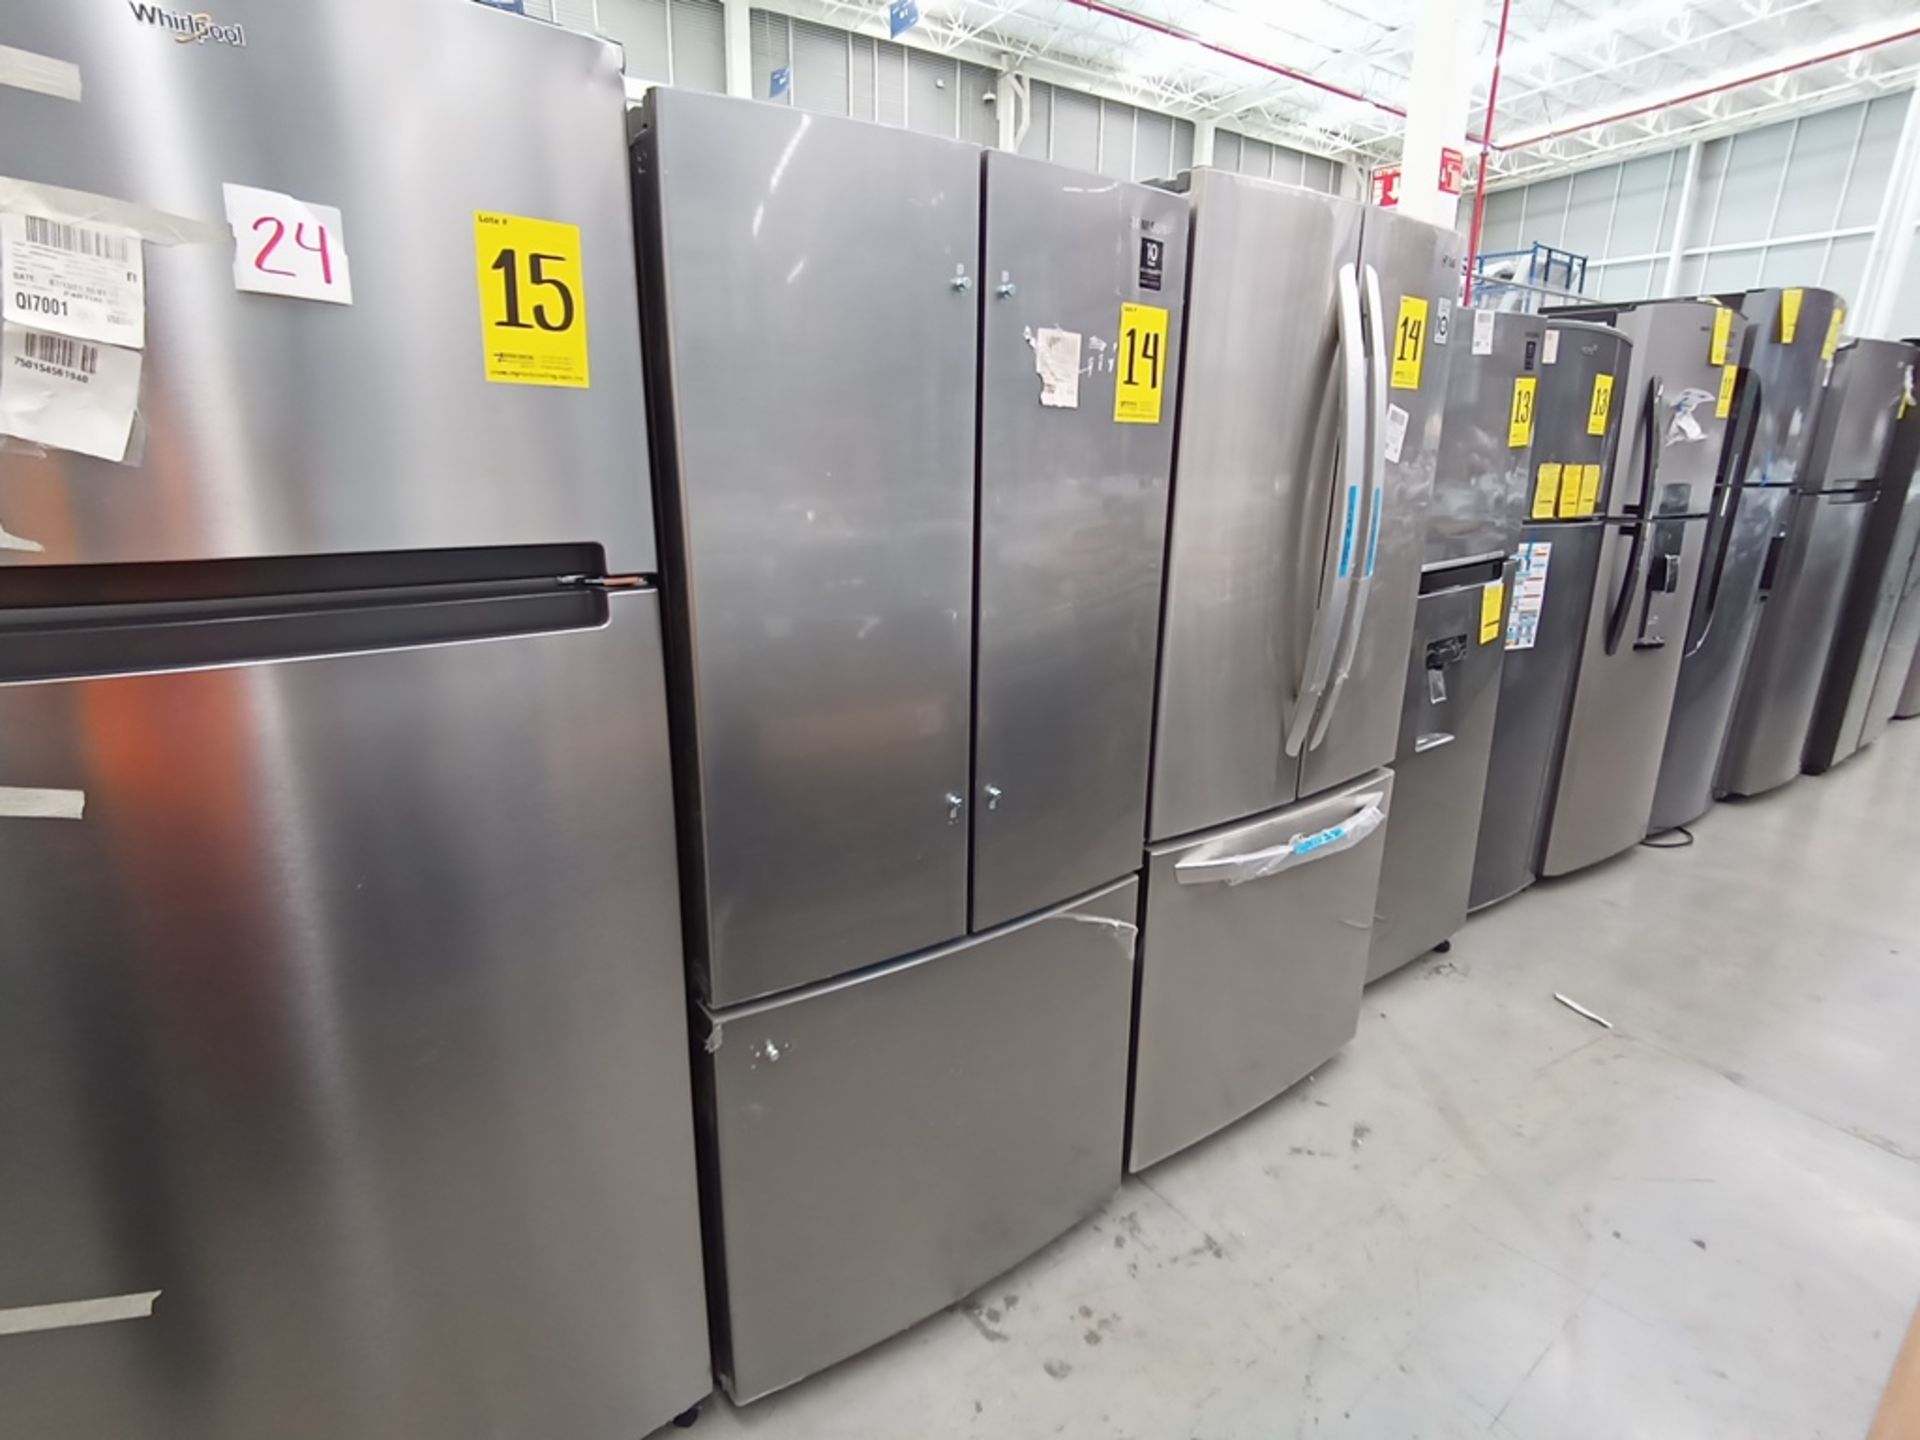 Lote de 2 refrigeradores contiene: 1 Refrigerador Marca LG, Modelo GF22BGSK, Serie 107MRMD4S595, Co - Image 4 of 16